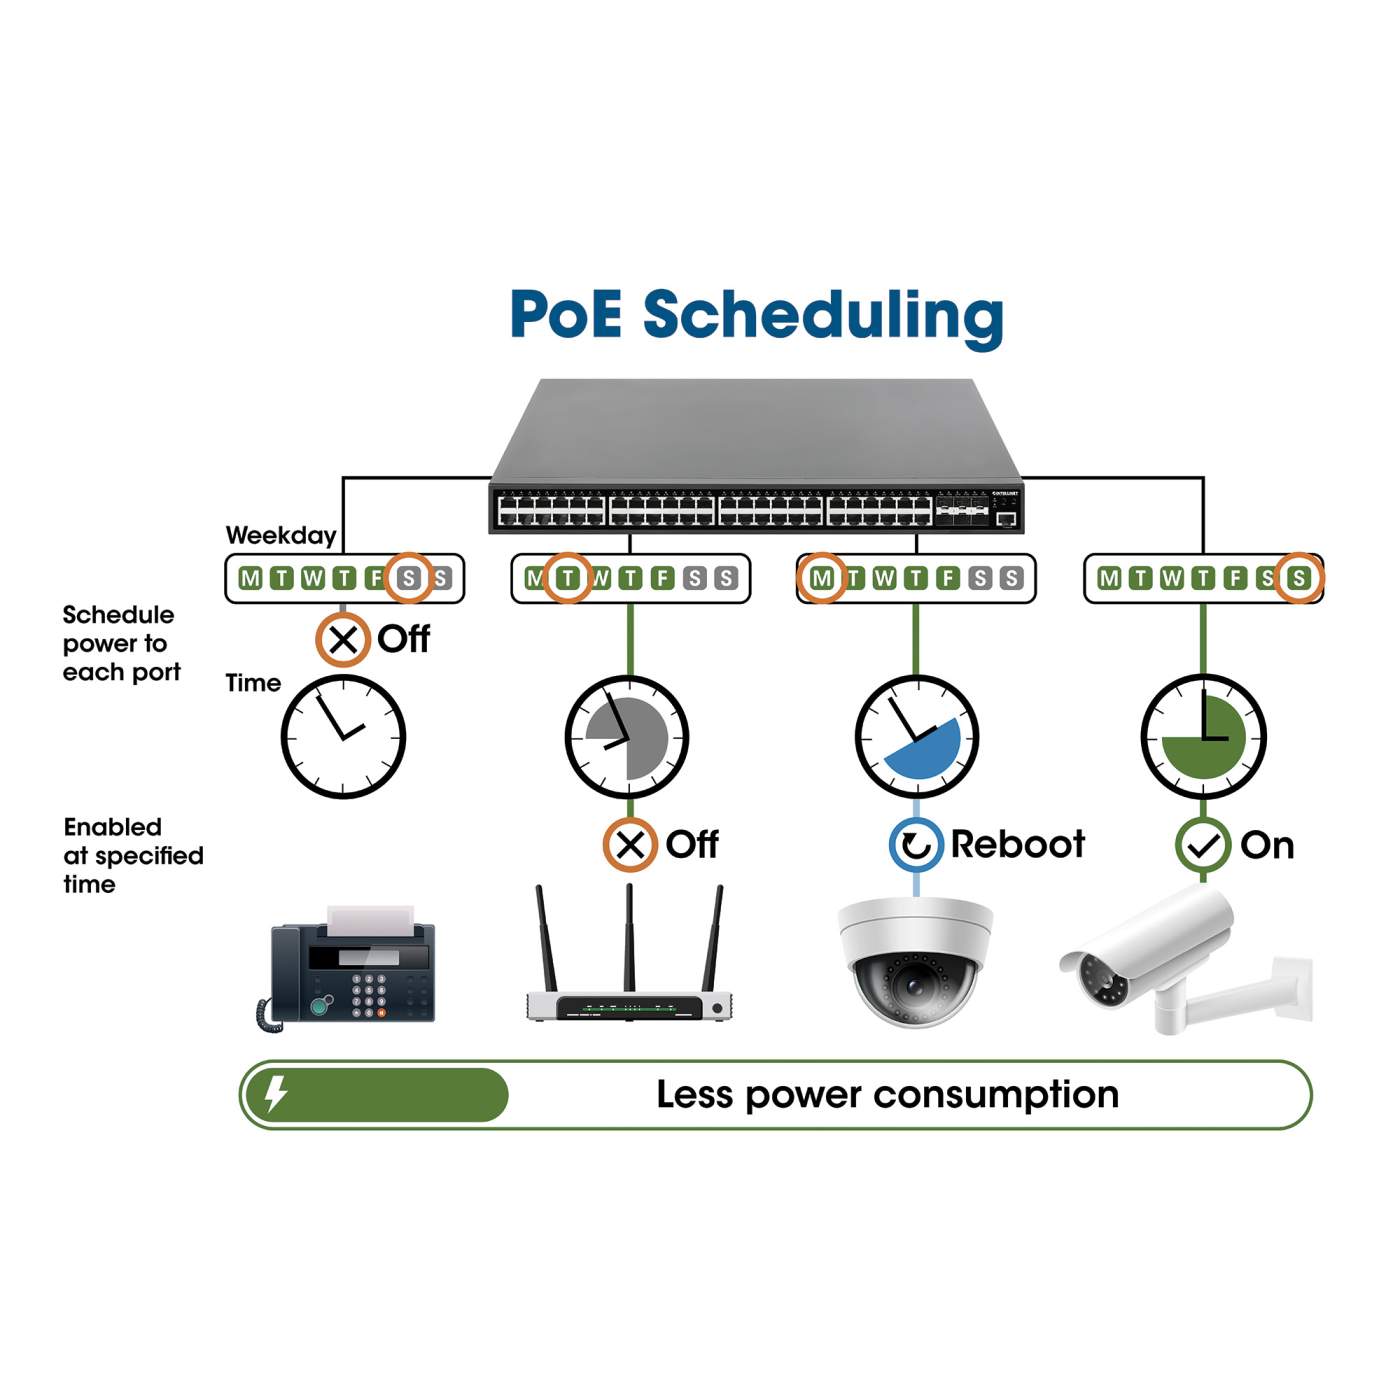 24-Port GbE PoE+ Switch w/ 2 SFP Ports & LCD Screen (561242) – Intellinet  Europe